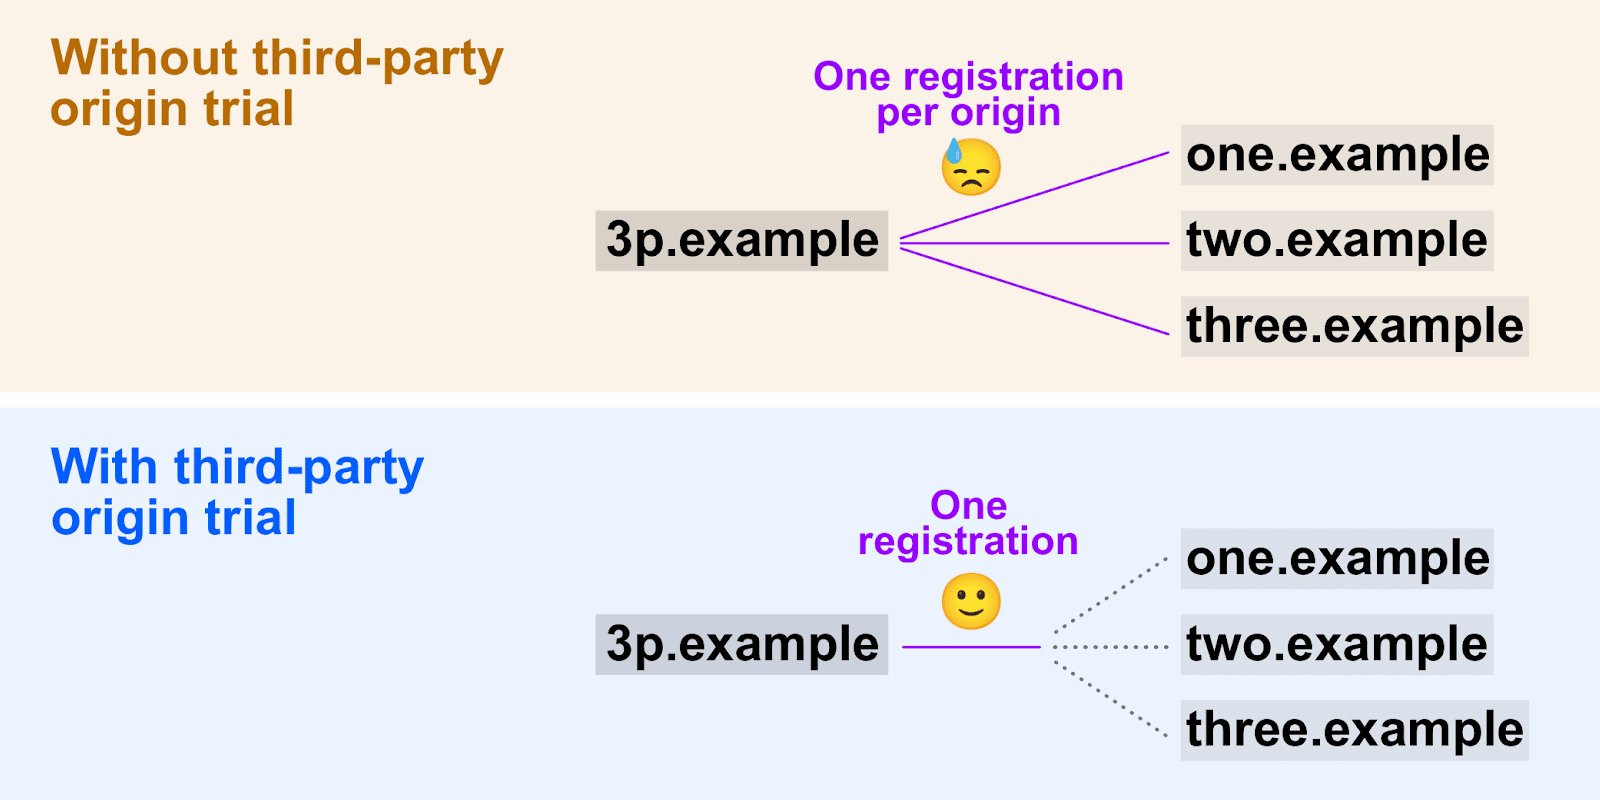 Diagrama en el que se muestra cómo
 las pruebas de origen de terceros permiten que se use un solo token de registro en varios orígenes.